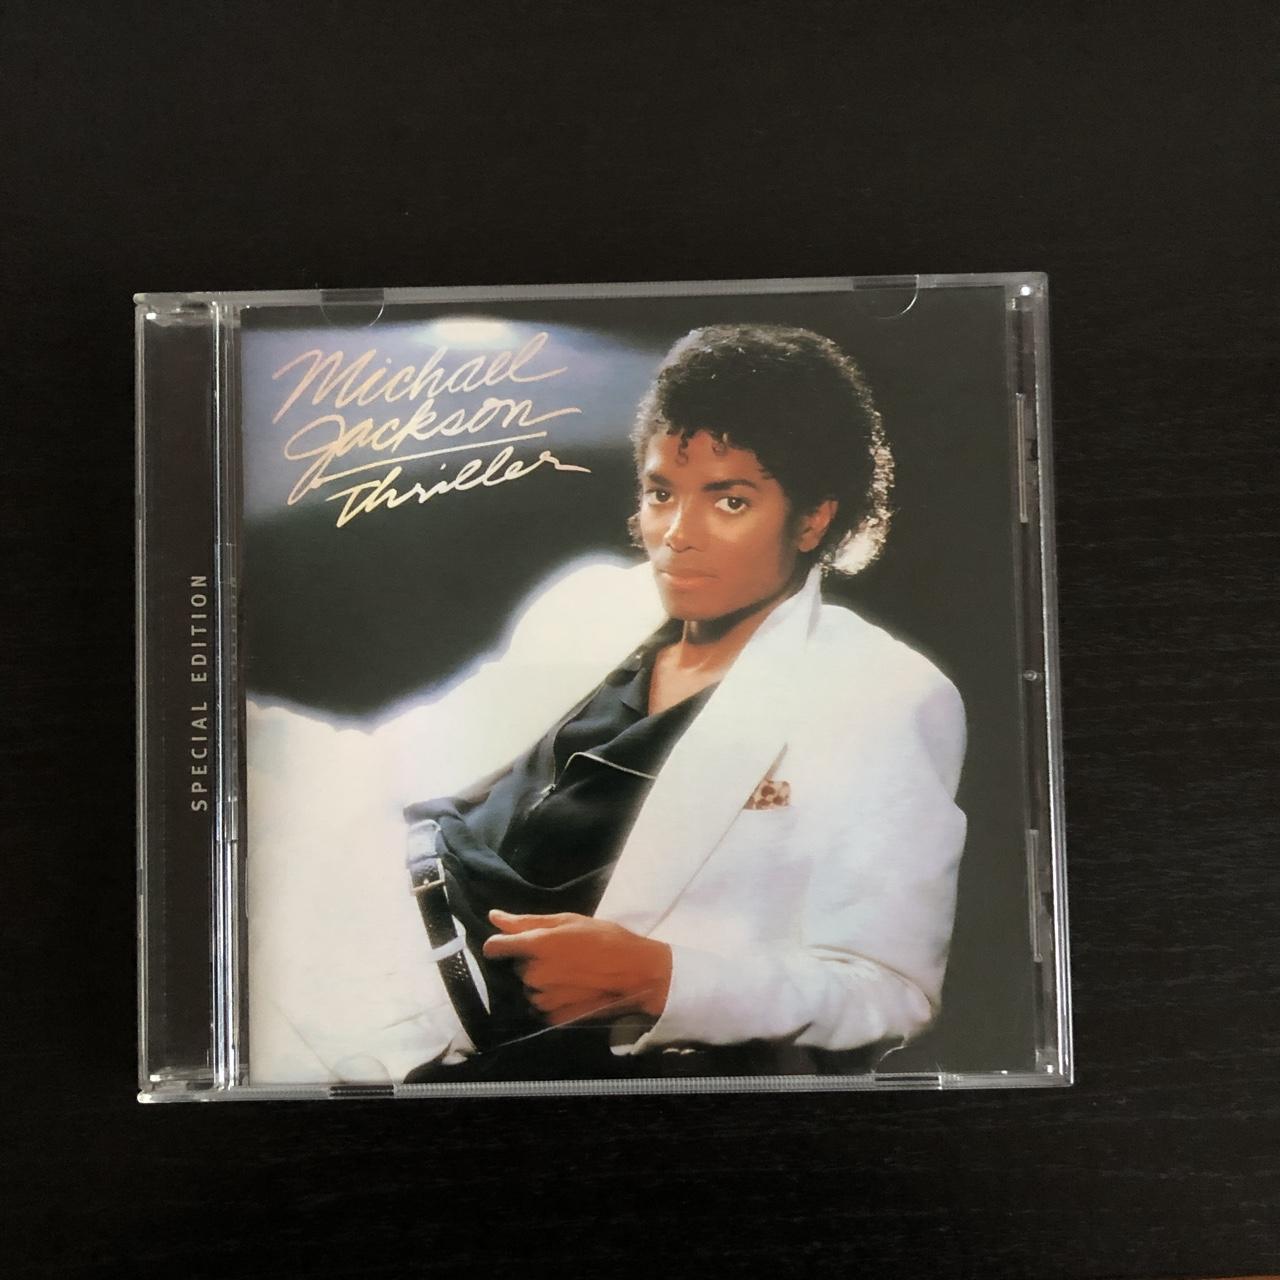 Michael Jackson “Thriller” Special Edition Album in